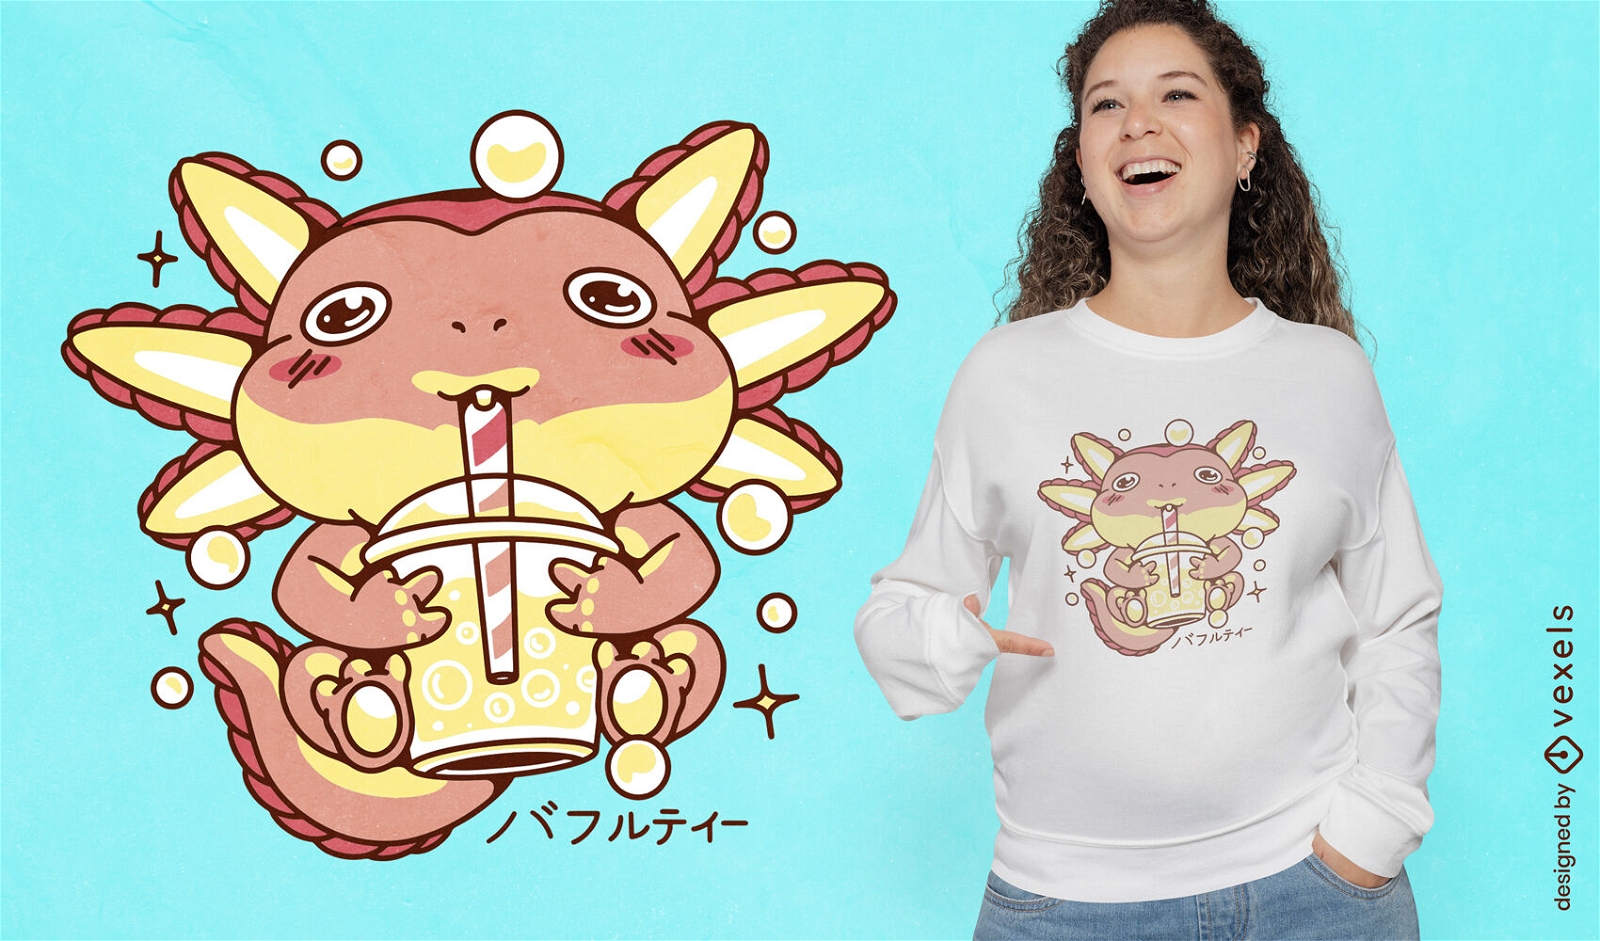 Axolotl-Bubble-Tea-Getr?nk-T-Shirt-Design